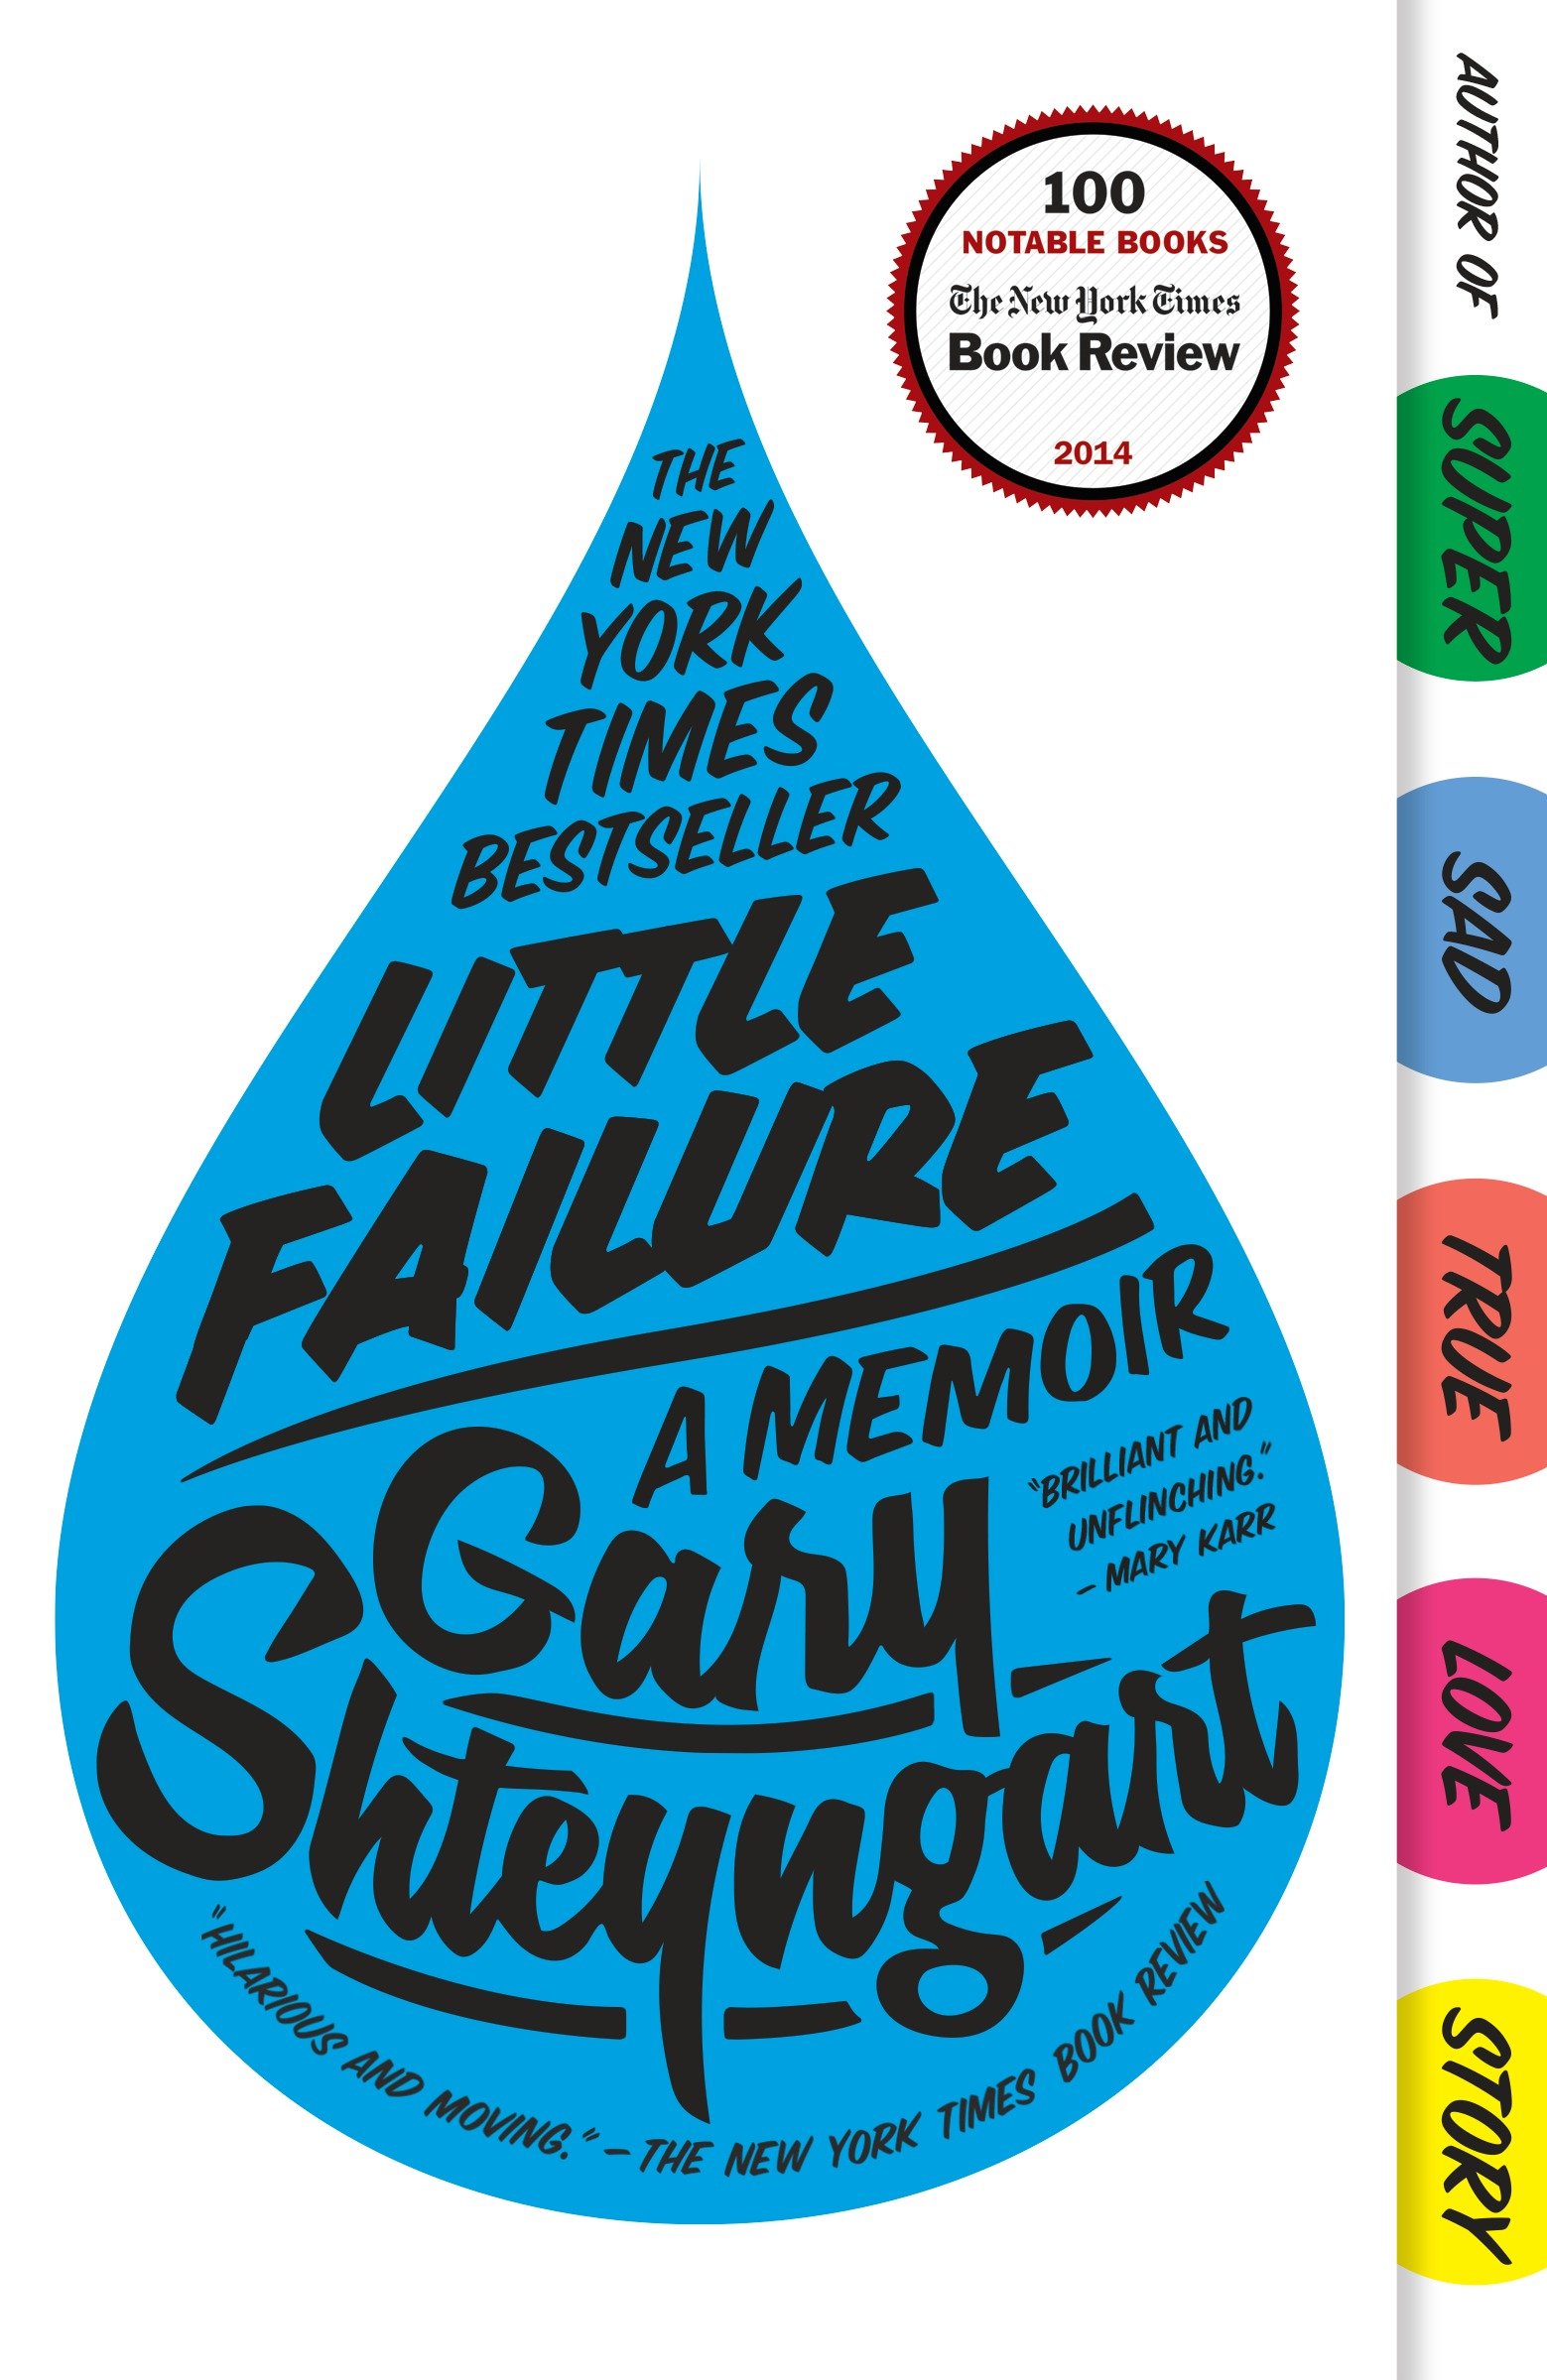 Little failure a memoir cover image